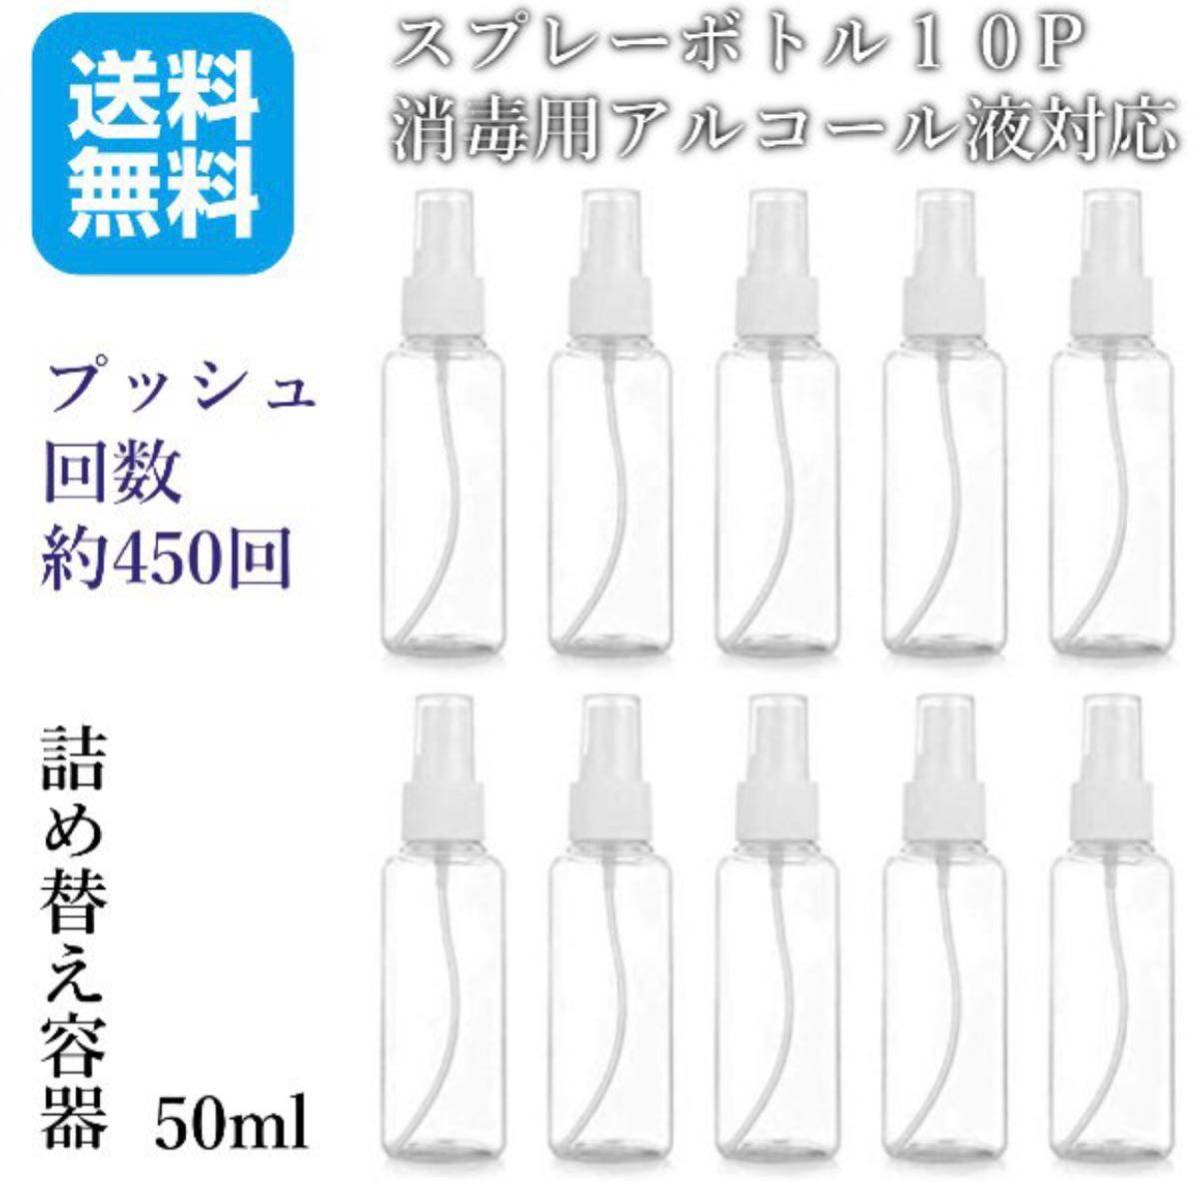 スプレーボトル アルコール対策ボトル 50ml 10個セット アルコール対応 化粧品 化粧水 透明小分けボトル 霧吹き 消毒液に適用